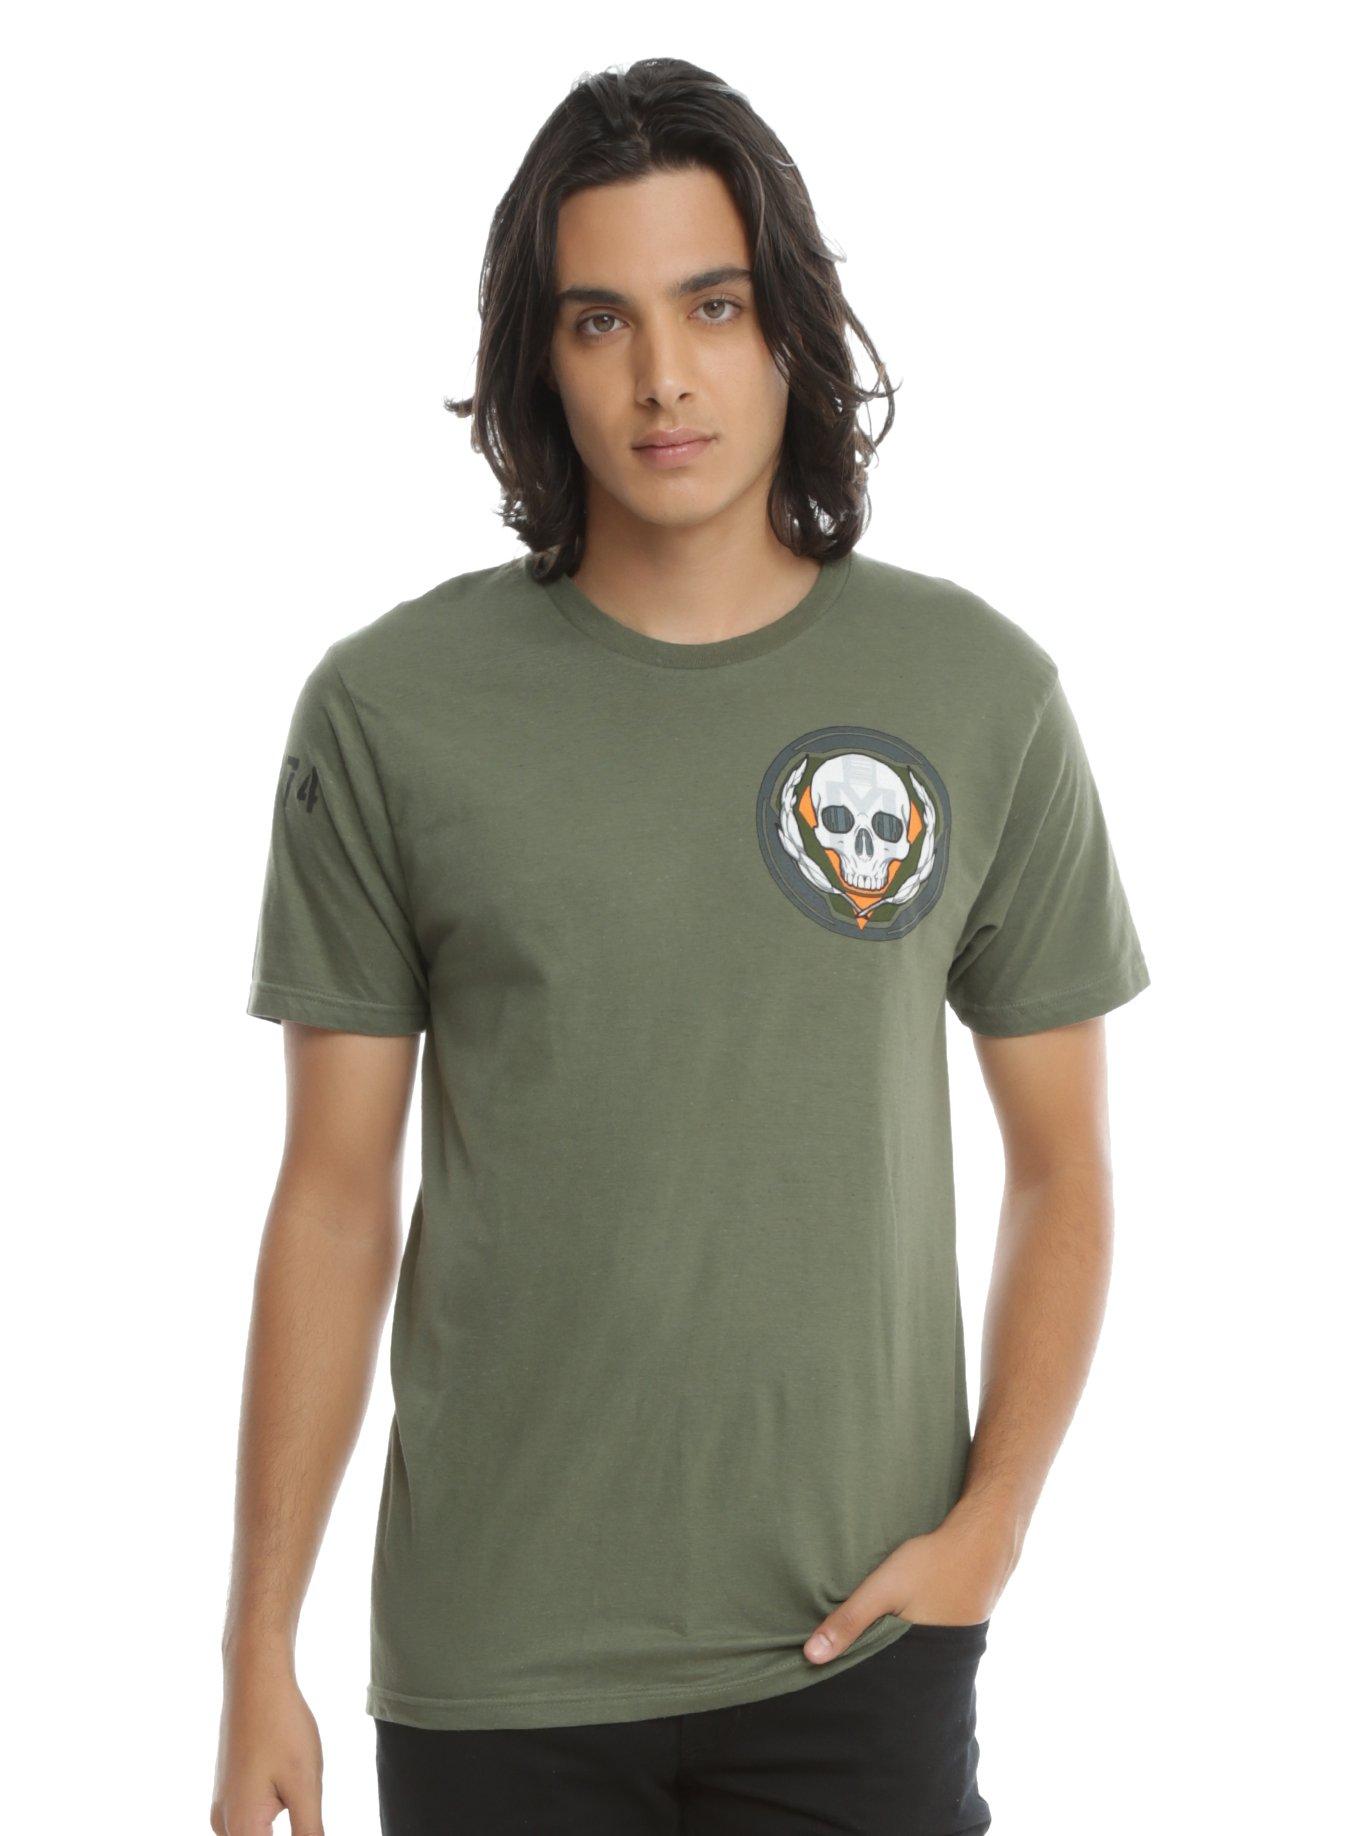 Titanfall 2 BT-7274 Pilot T-Shirt, , alternate